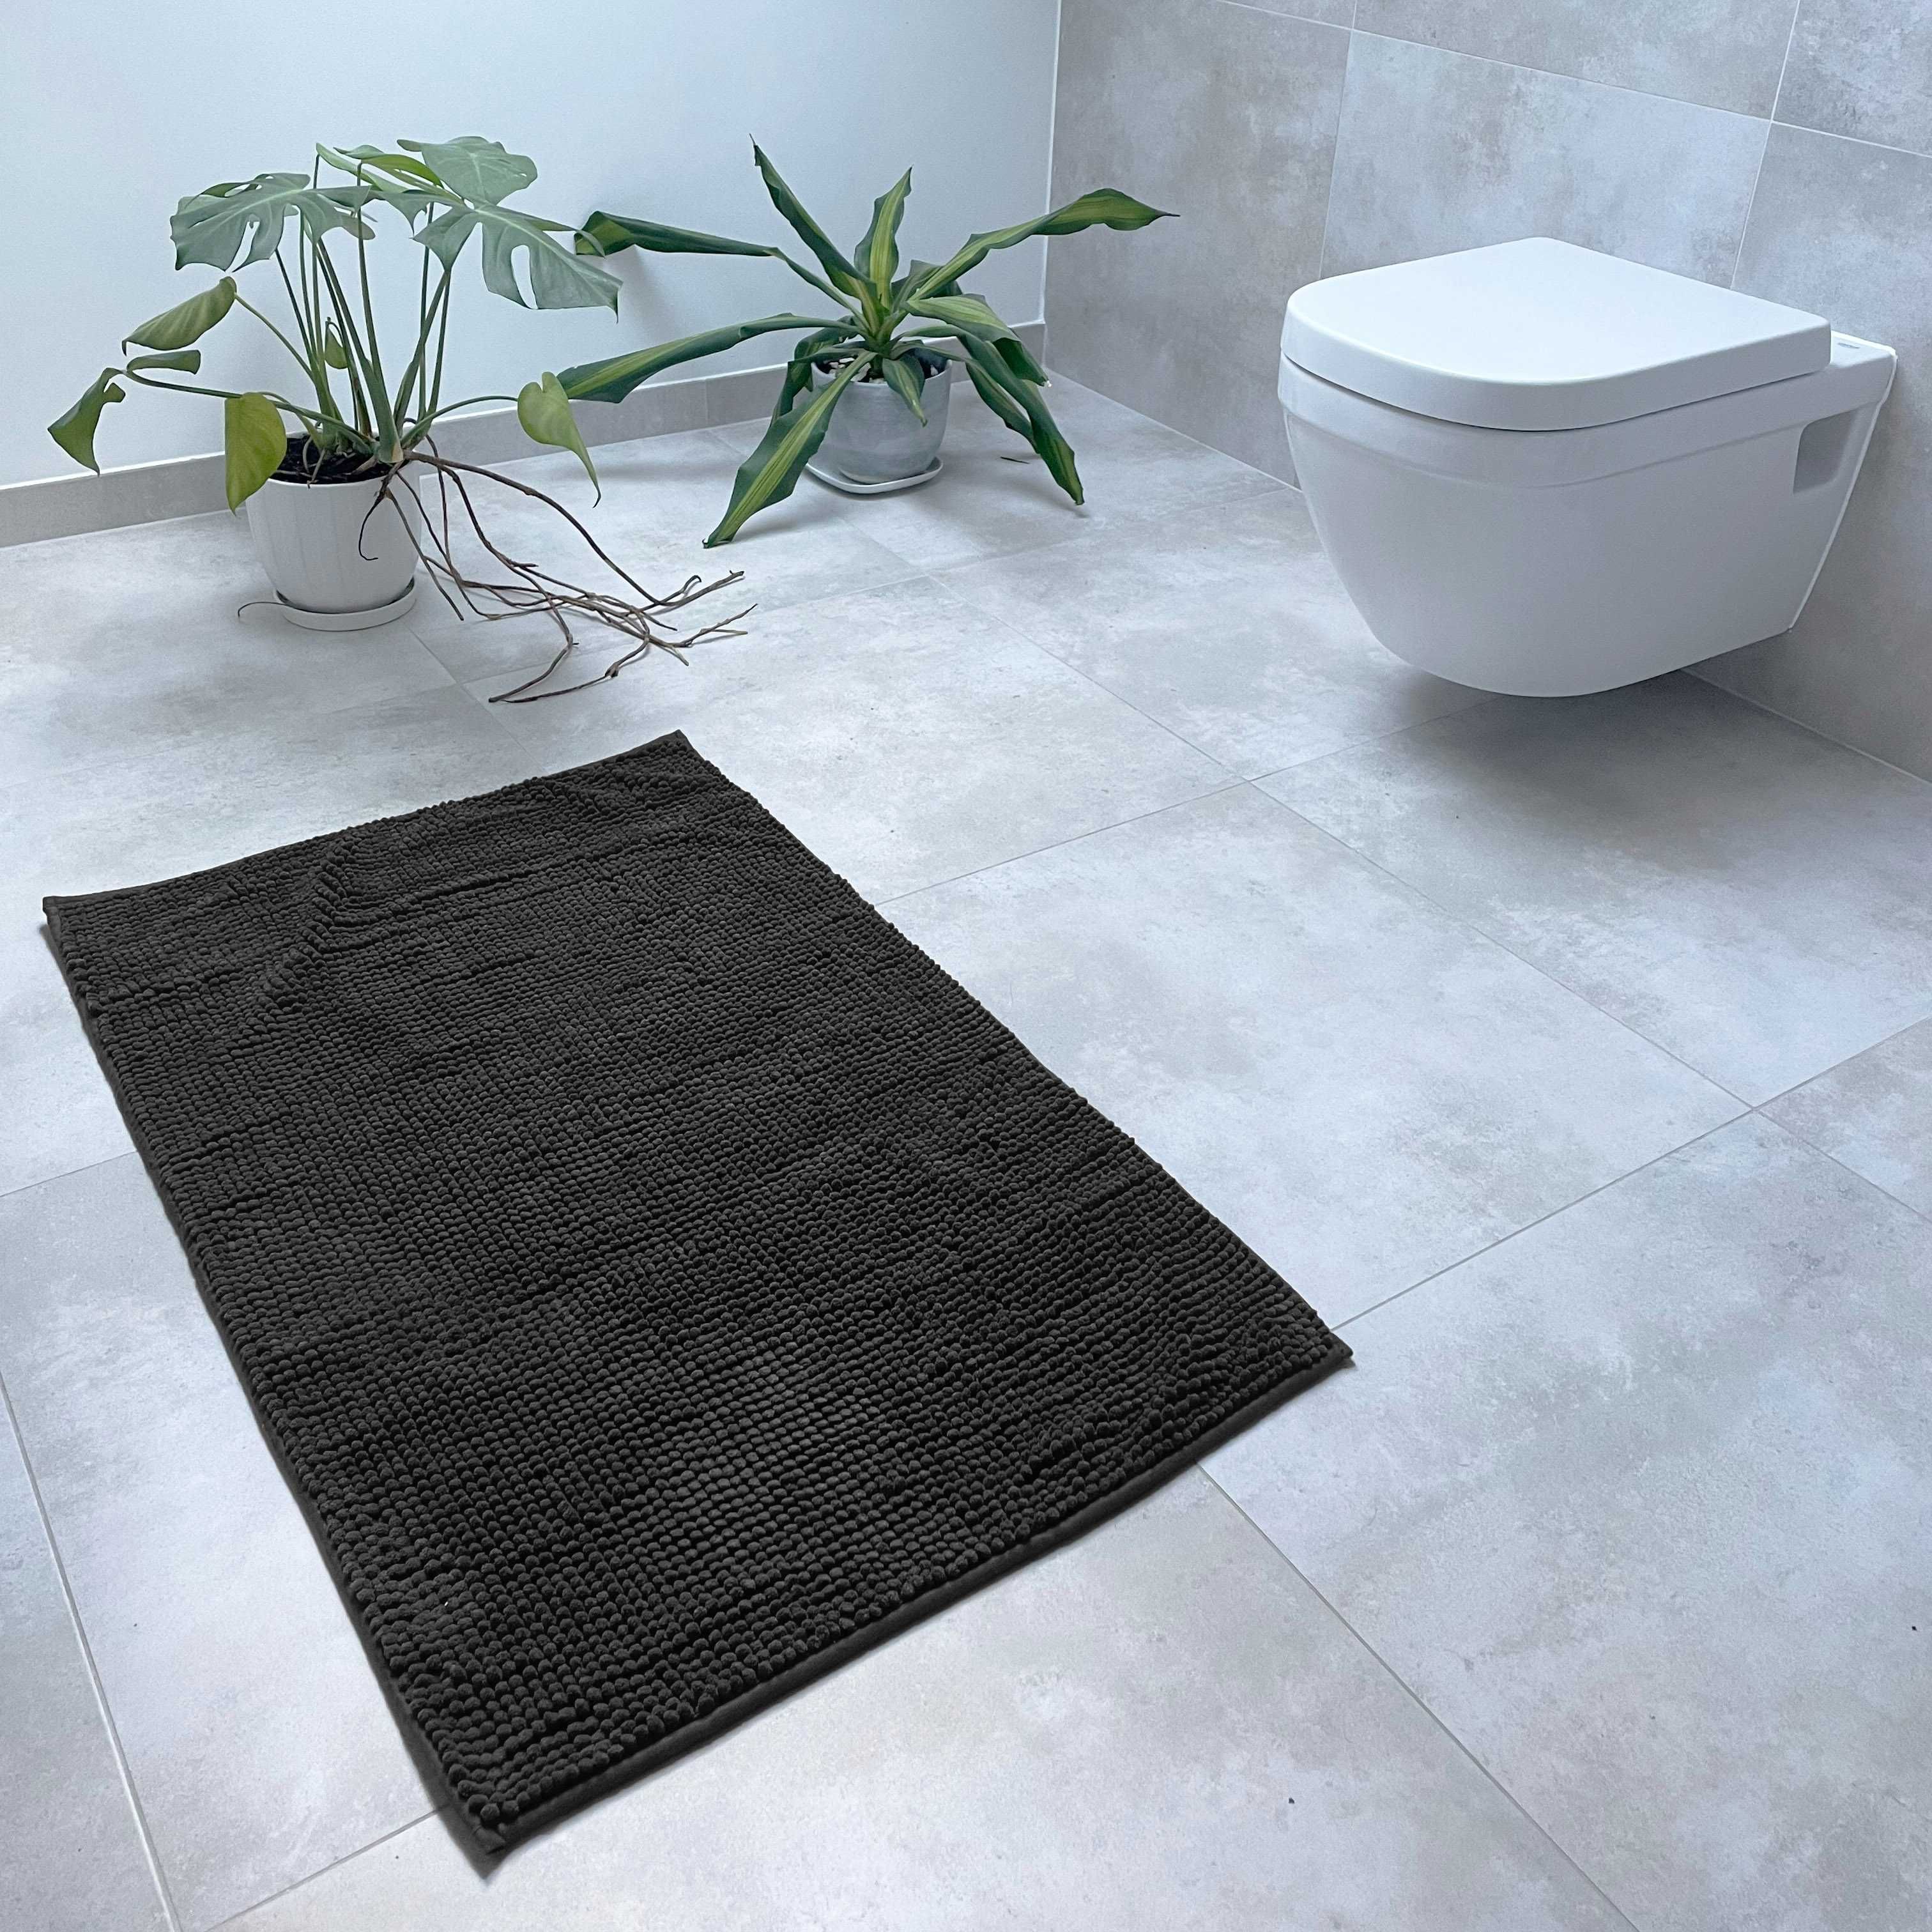 Dywanik łazienkowy dywan do łazienki pod toaletę wannę miękki 50x80cm